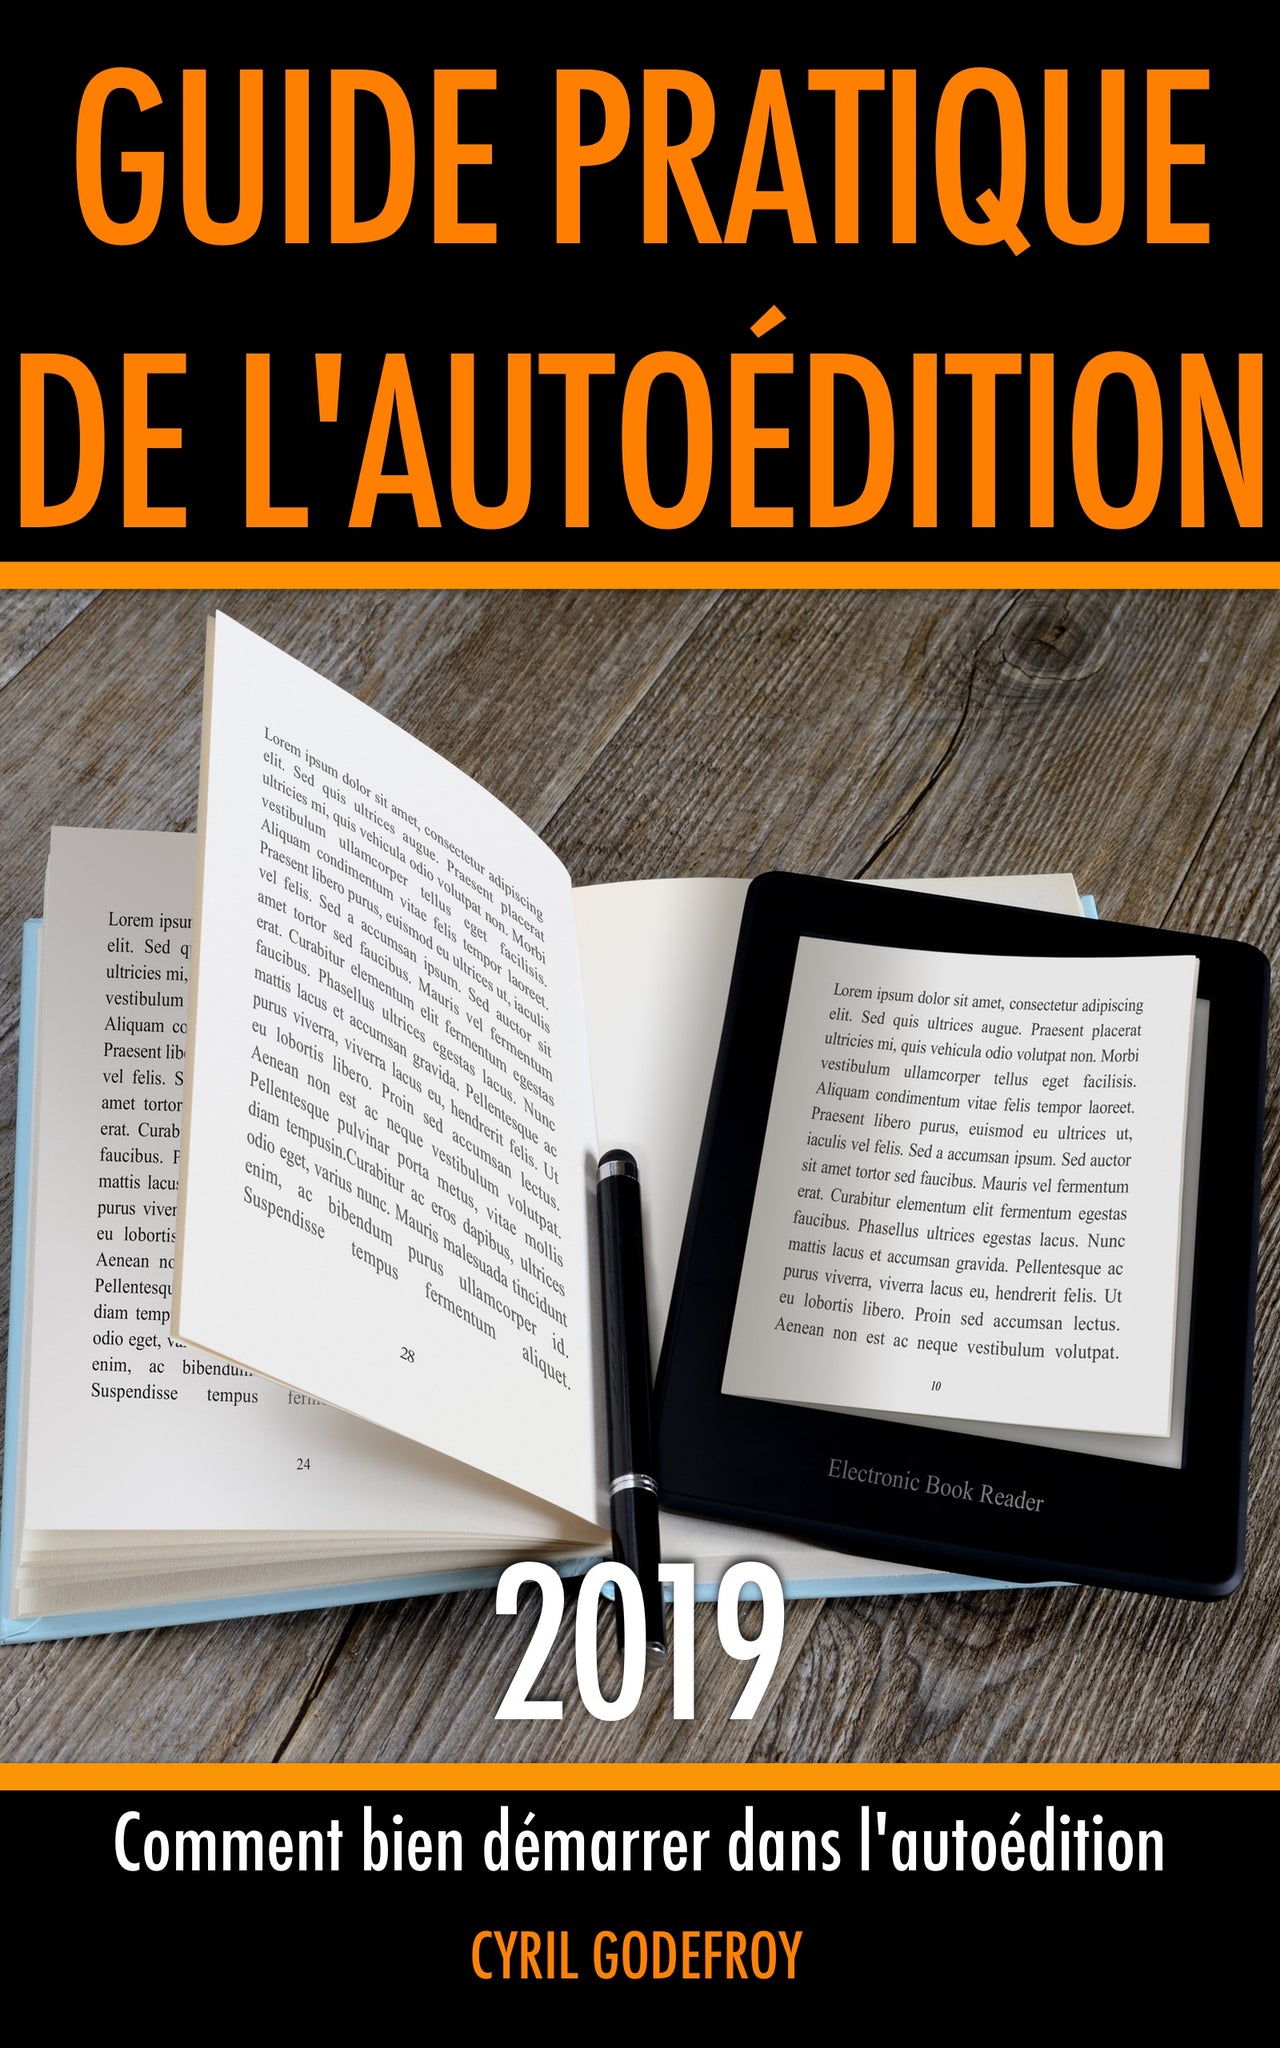 Guide pratique de l'autoédition 2019 - papier